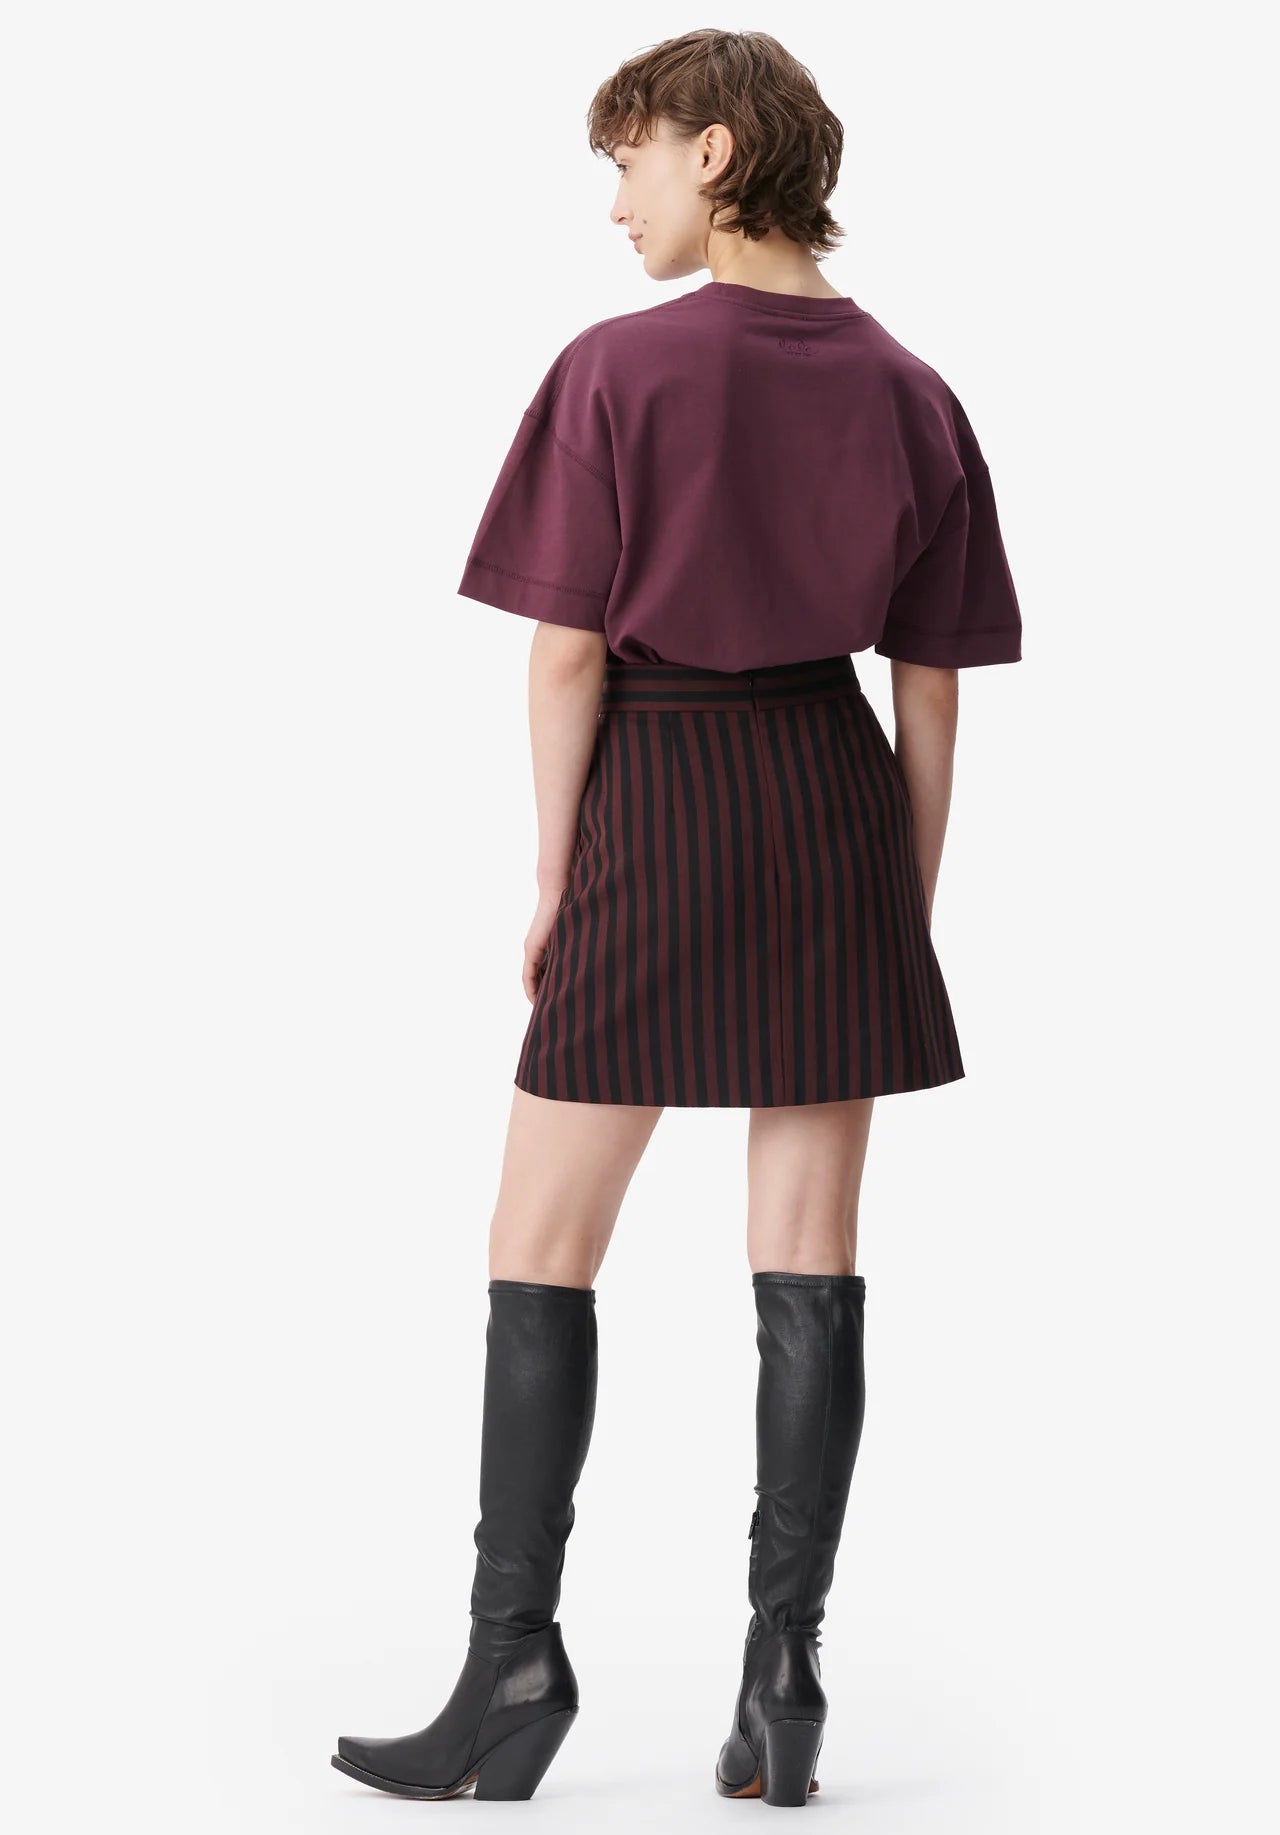 Skirt Saki Striped Fudge